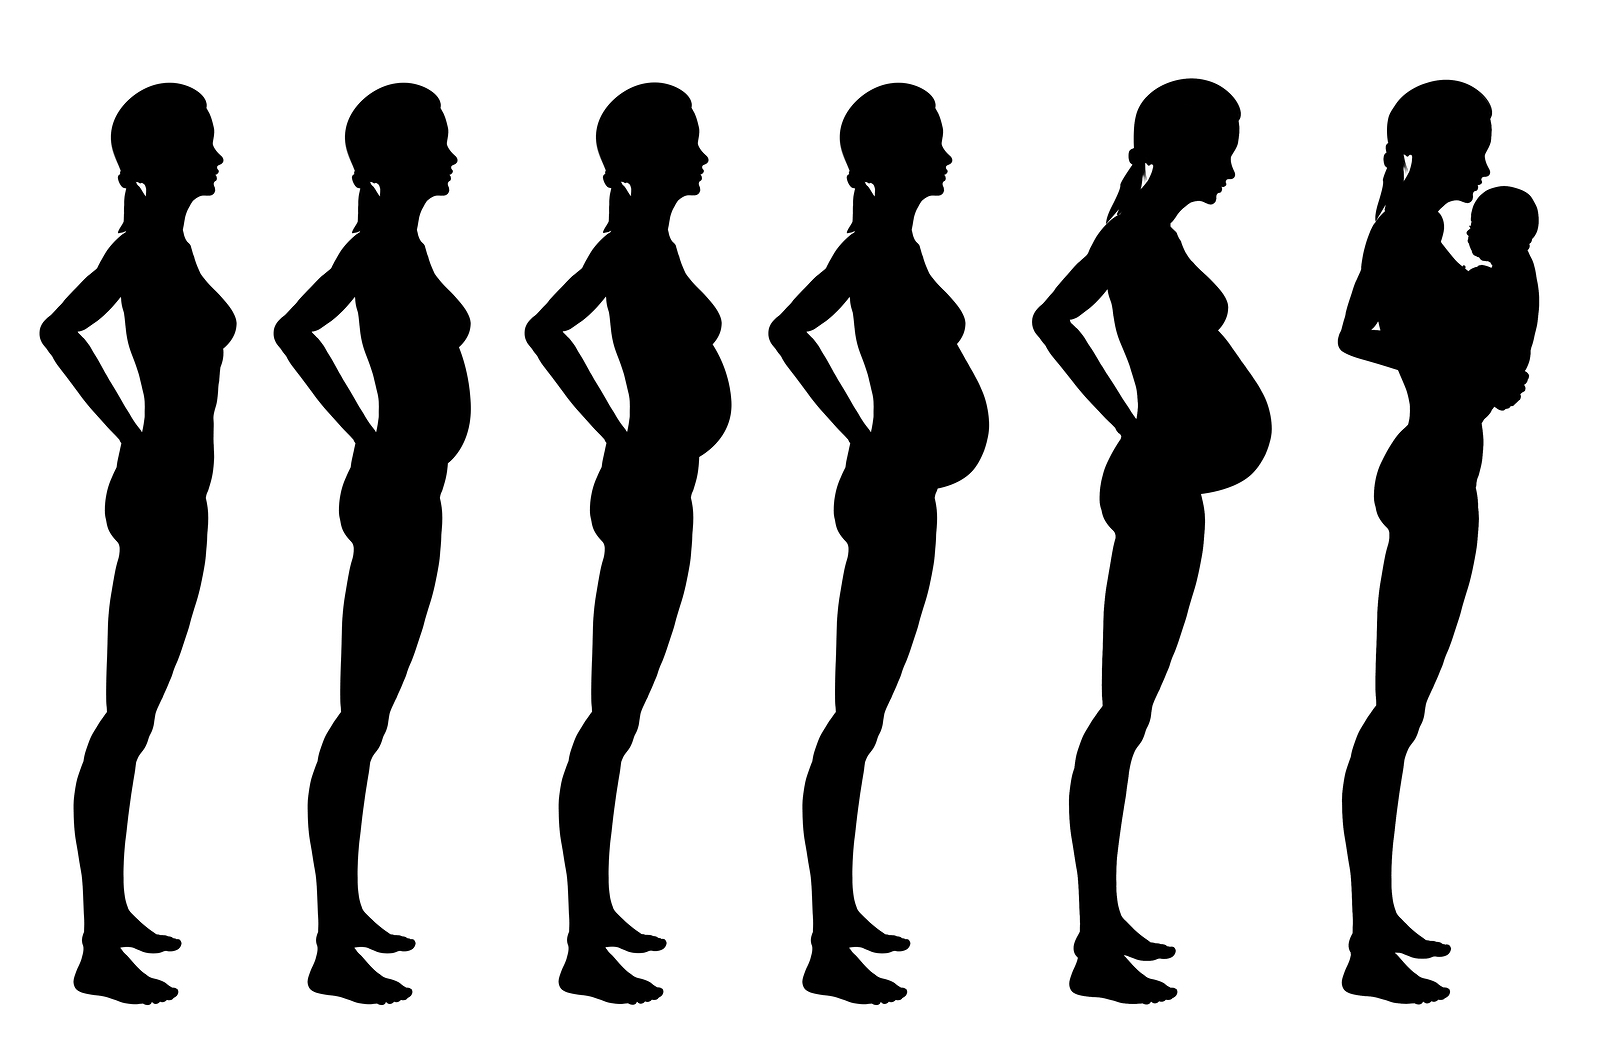 Для тех кому нравятся беременные фигурки создана эта галерея с разными девушками в положении 